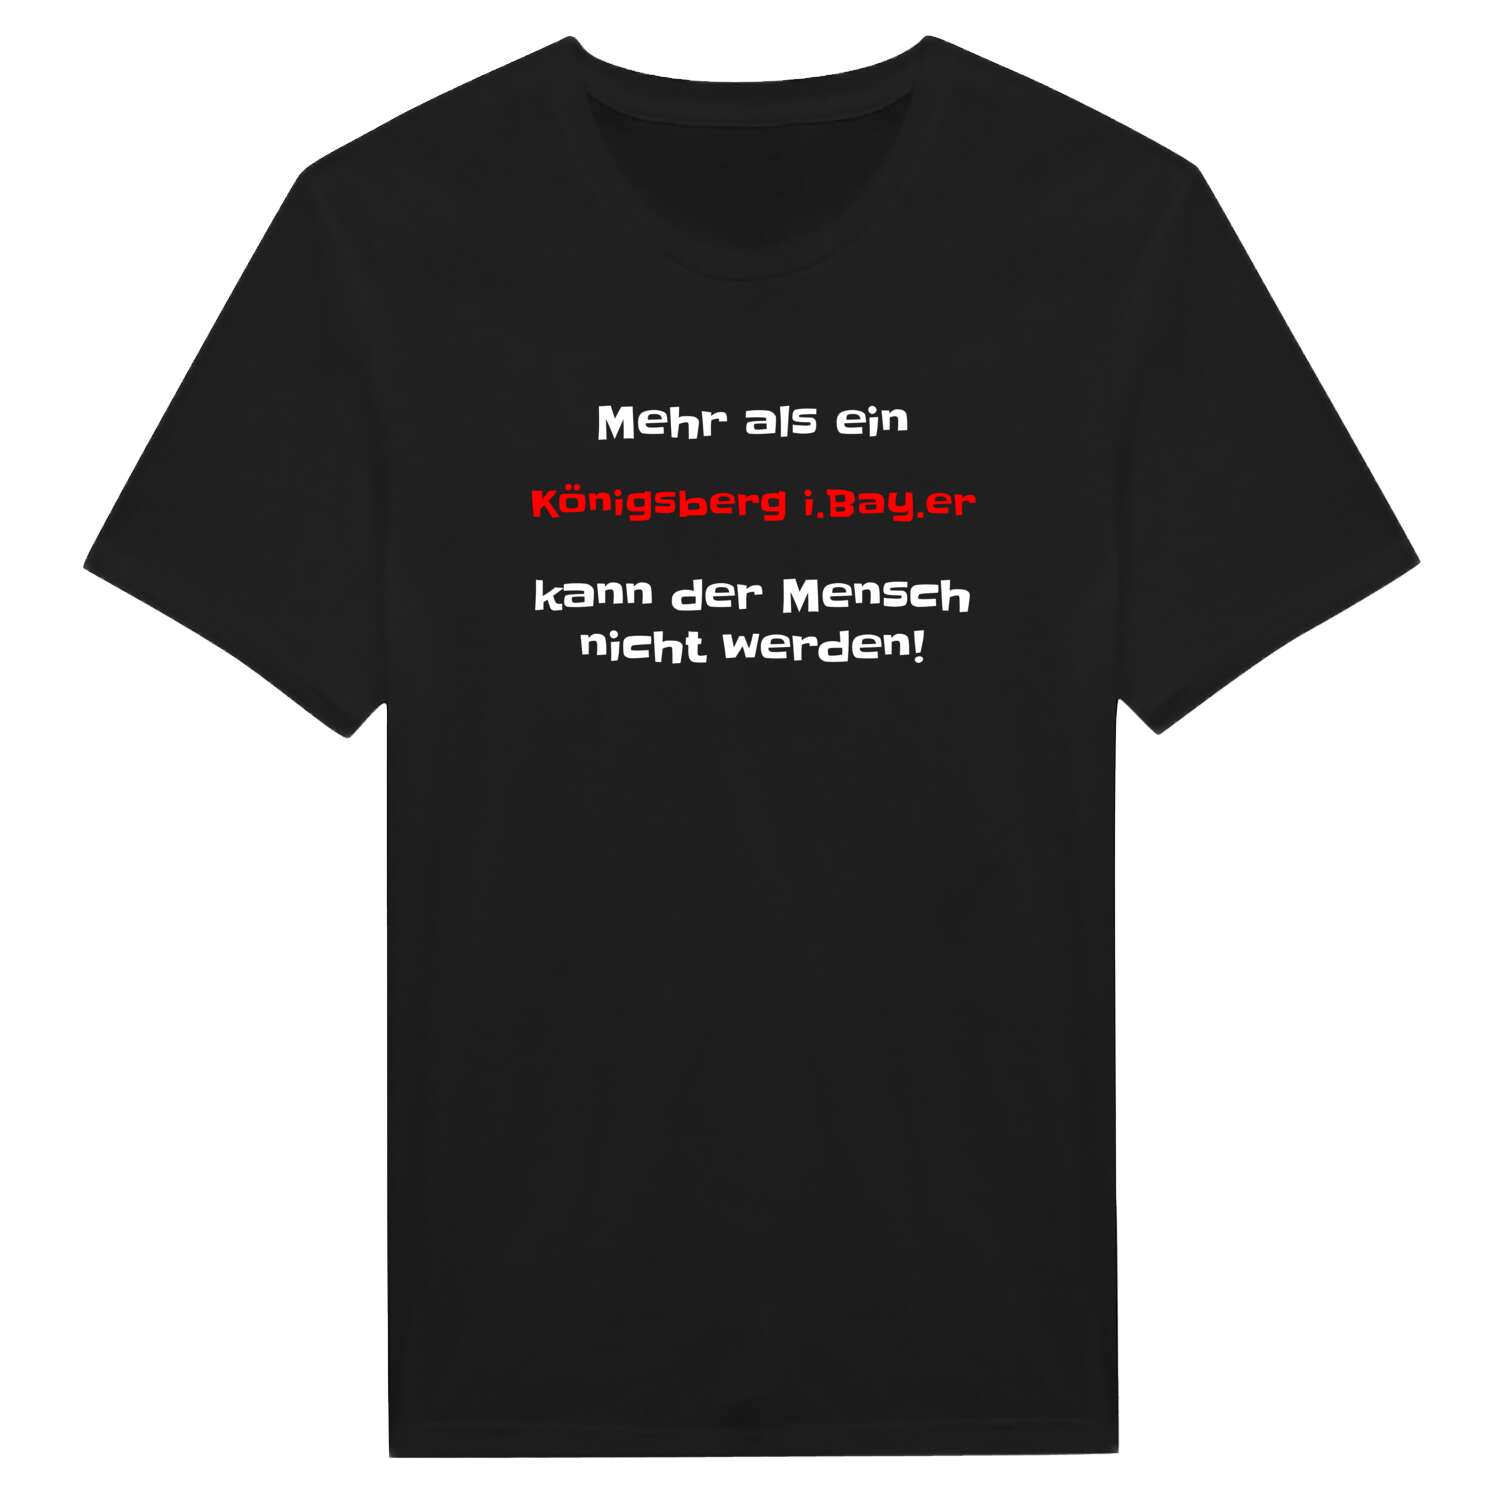 Königsberg i.Bay. T-Shirt »Mehr als ein«